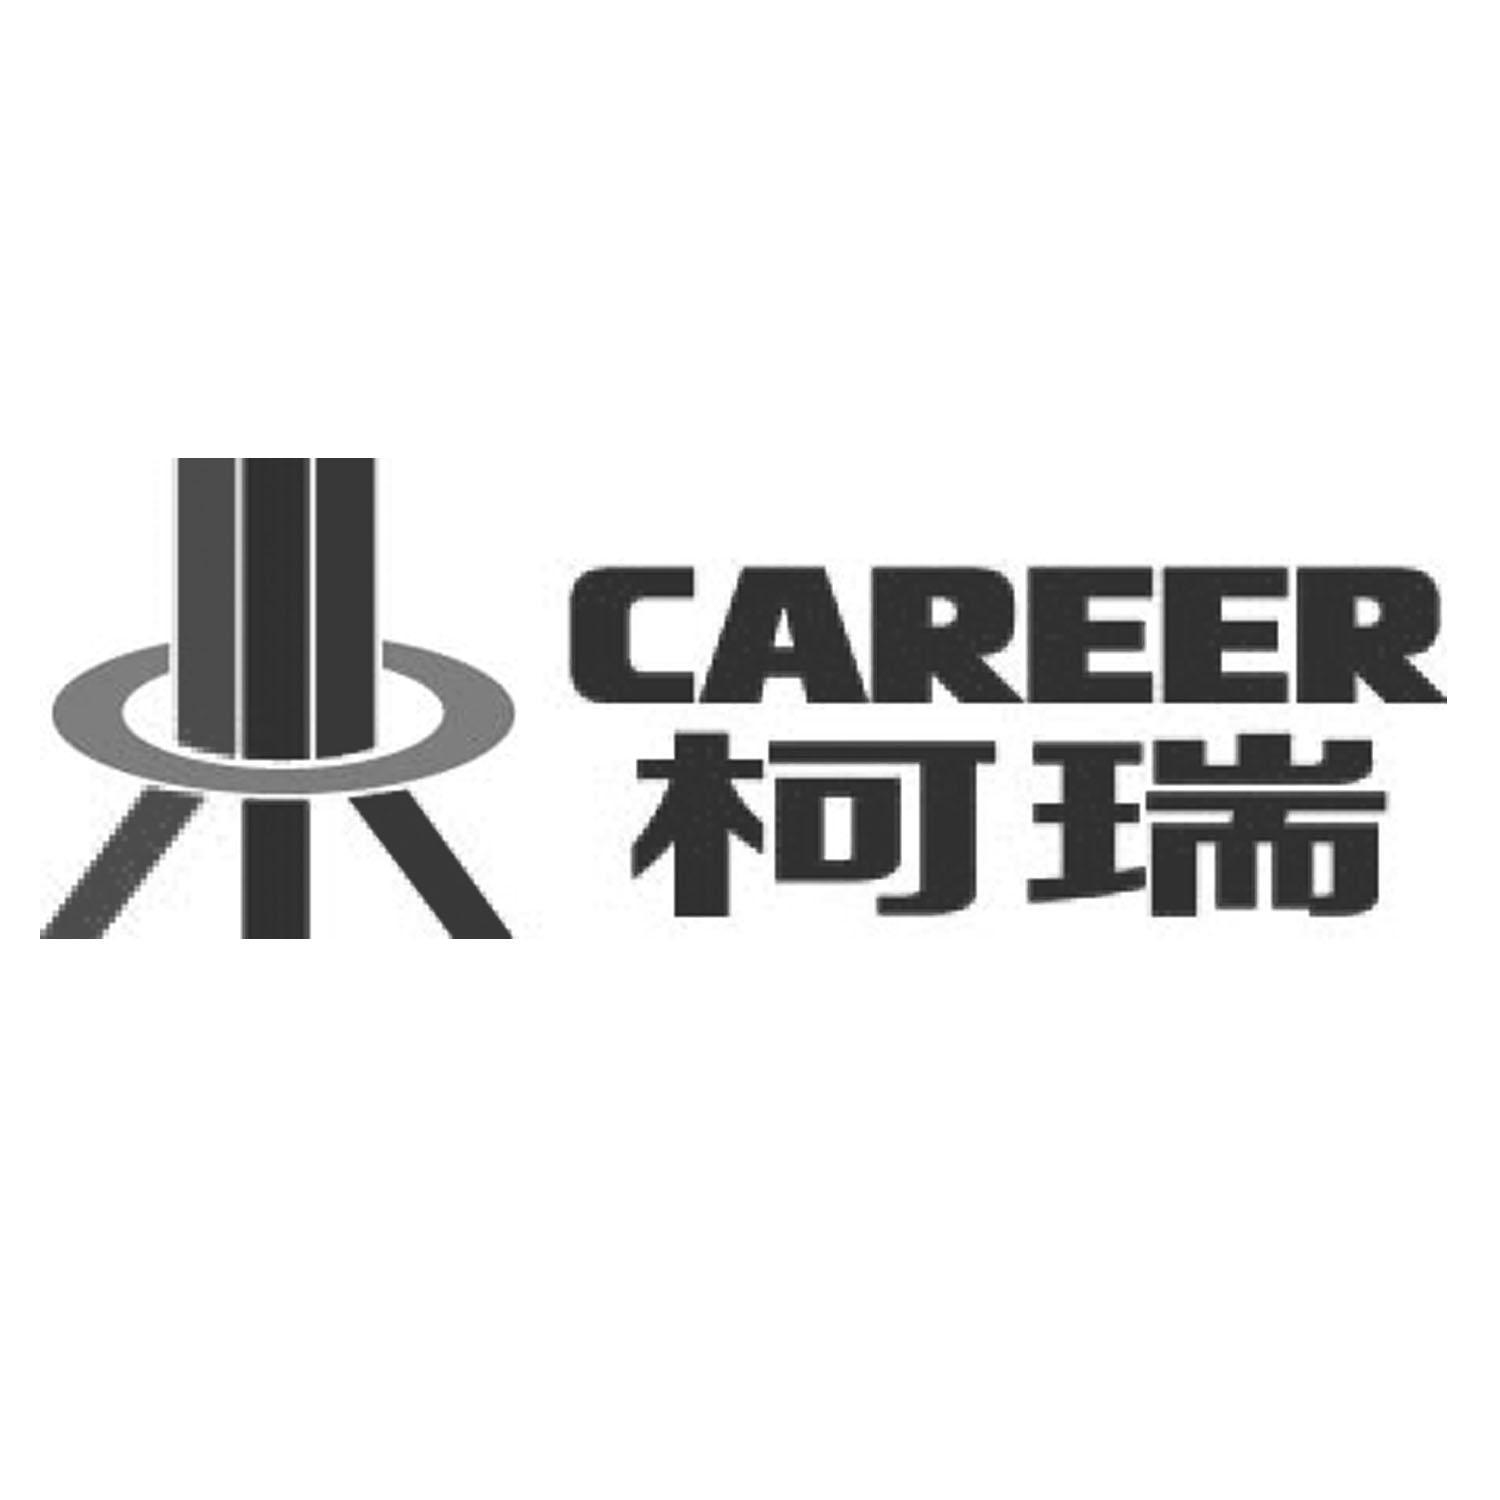 柯瑞工程-832842-江蘇柯瑞機電工程股份有限公司